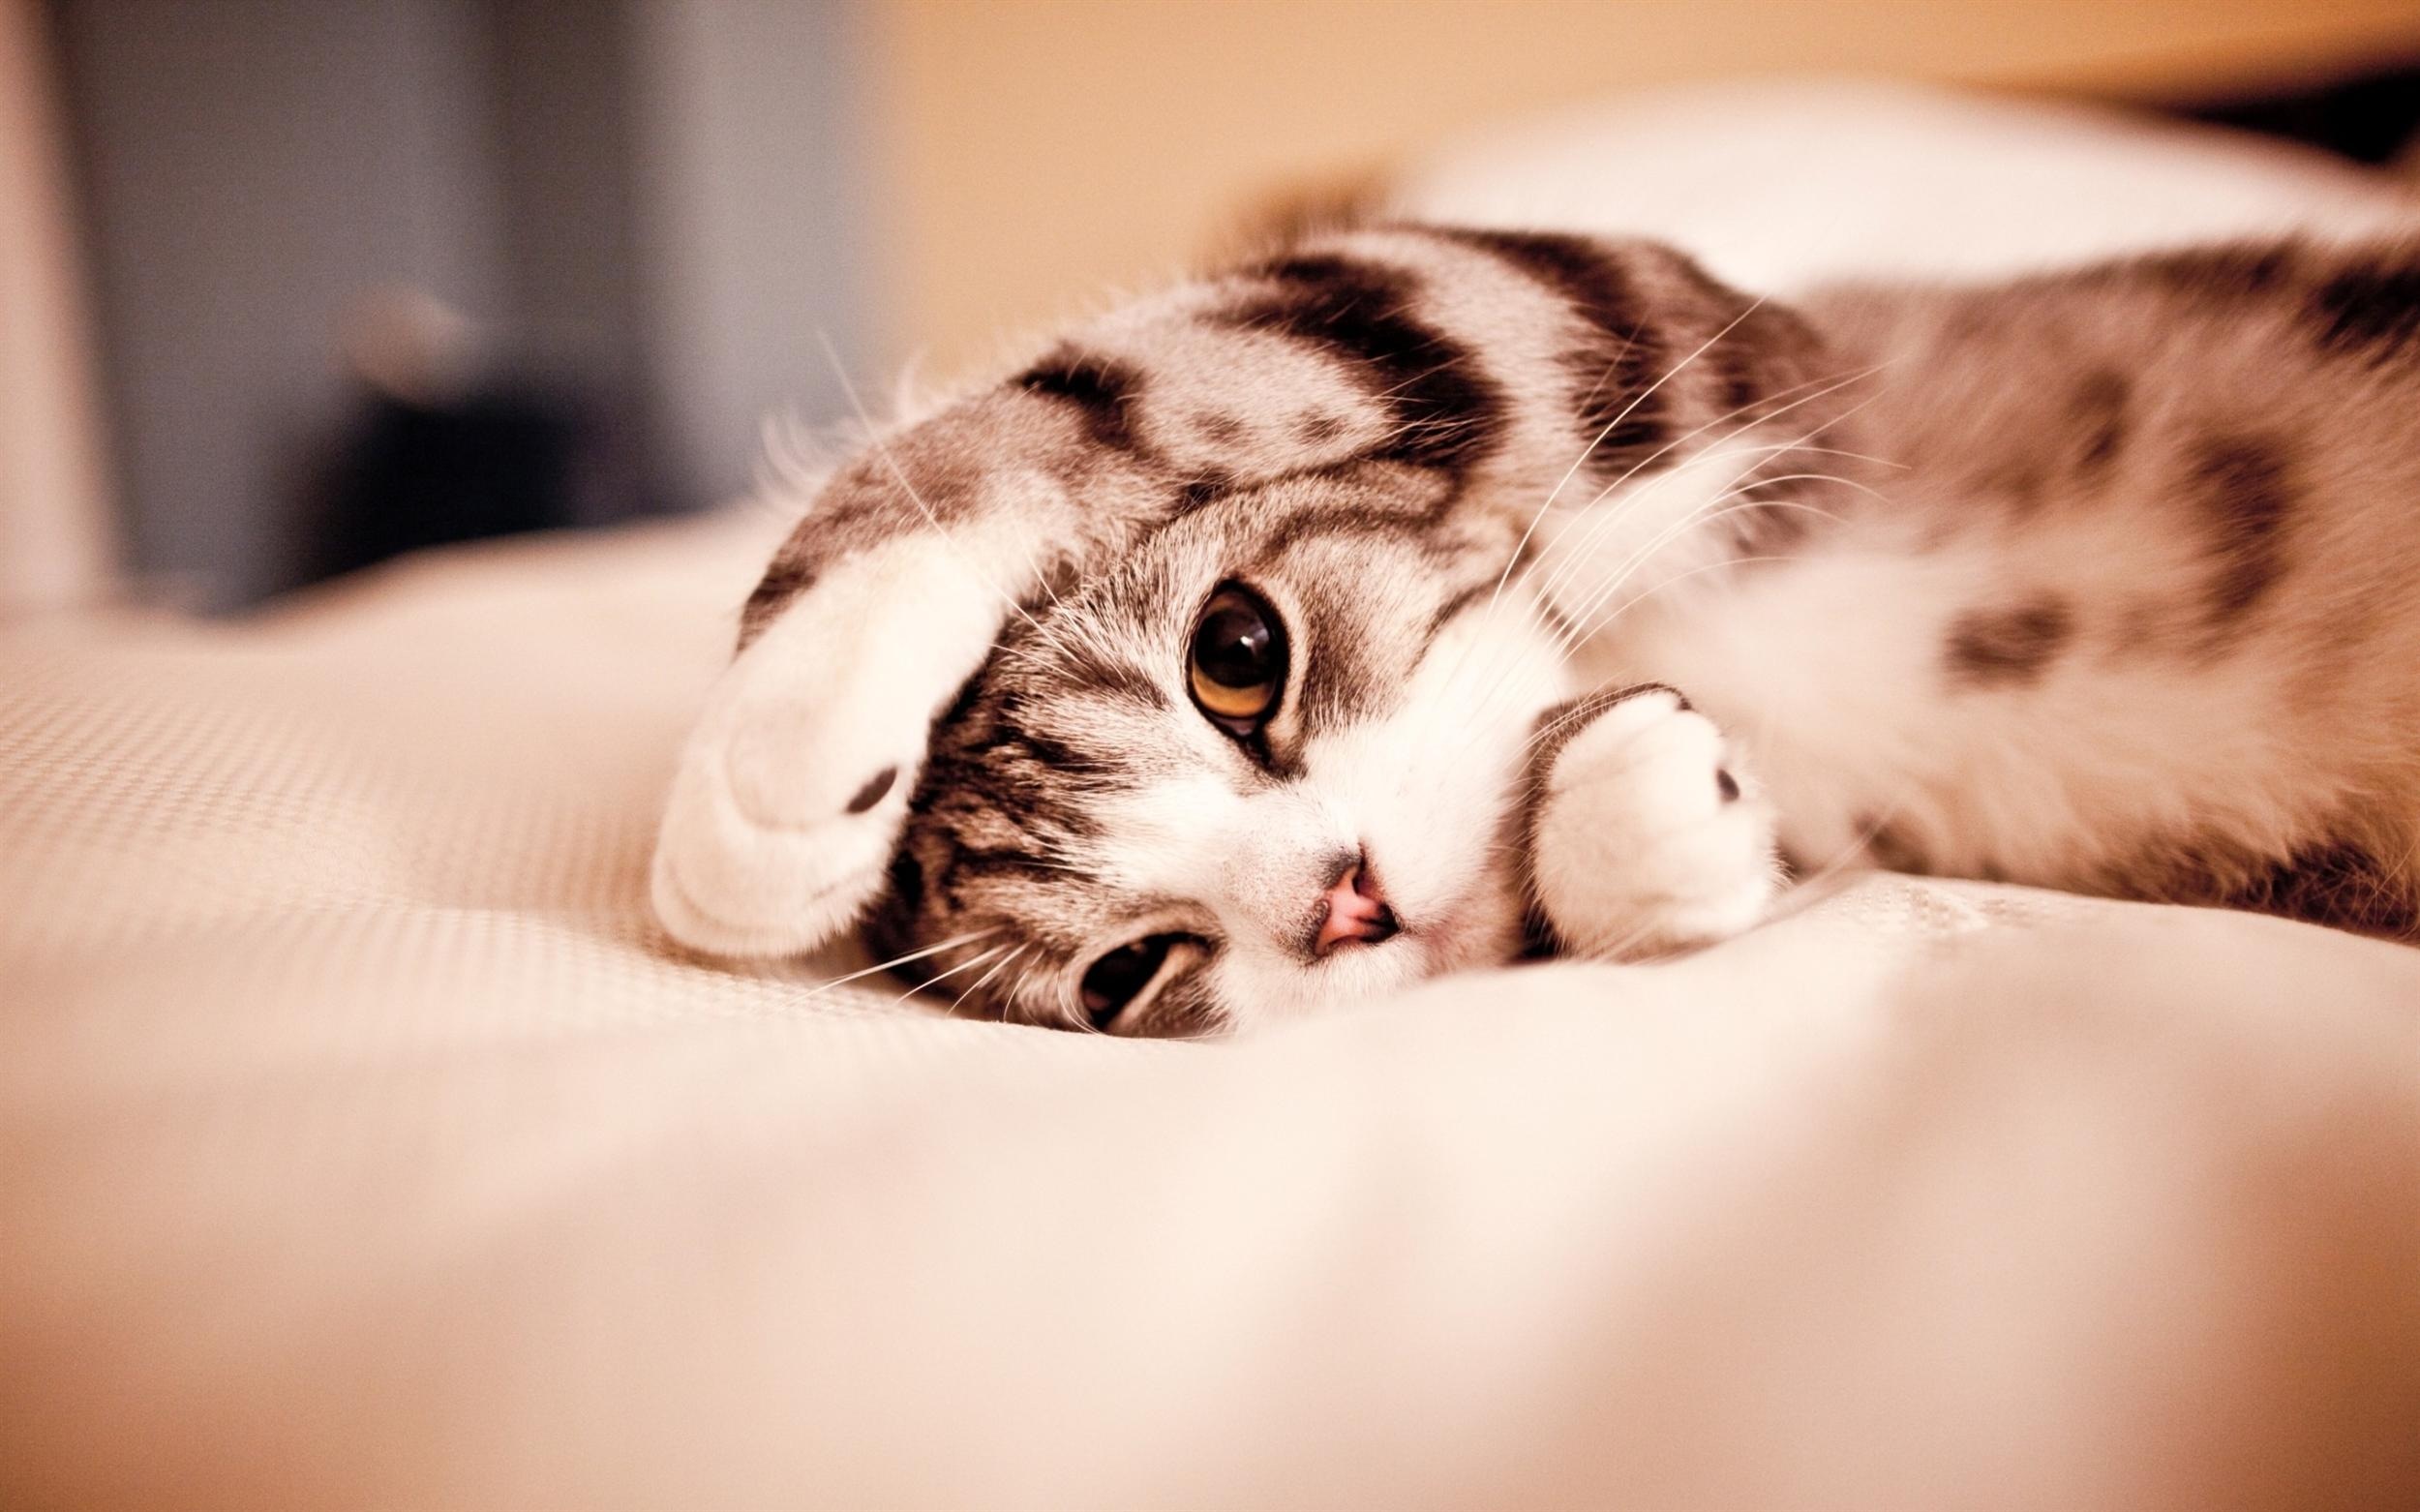 Cute Cat Sleep Wallpaper Desktop High Resolution